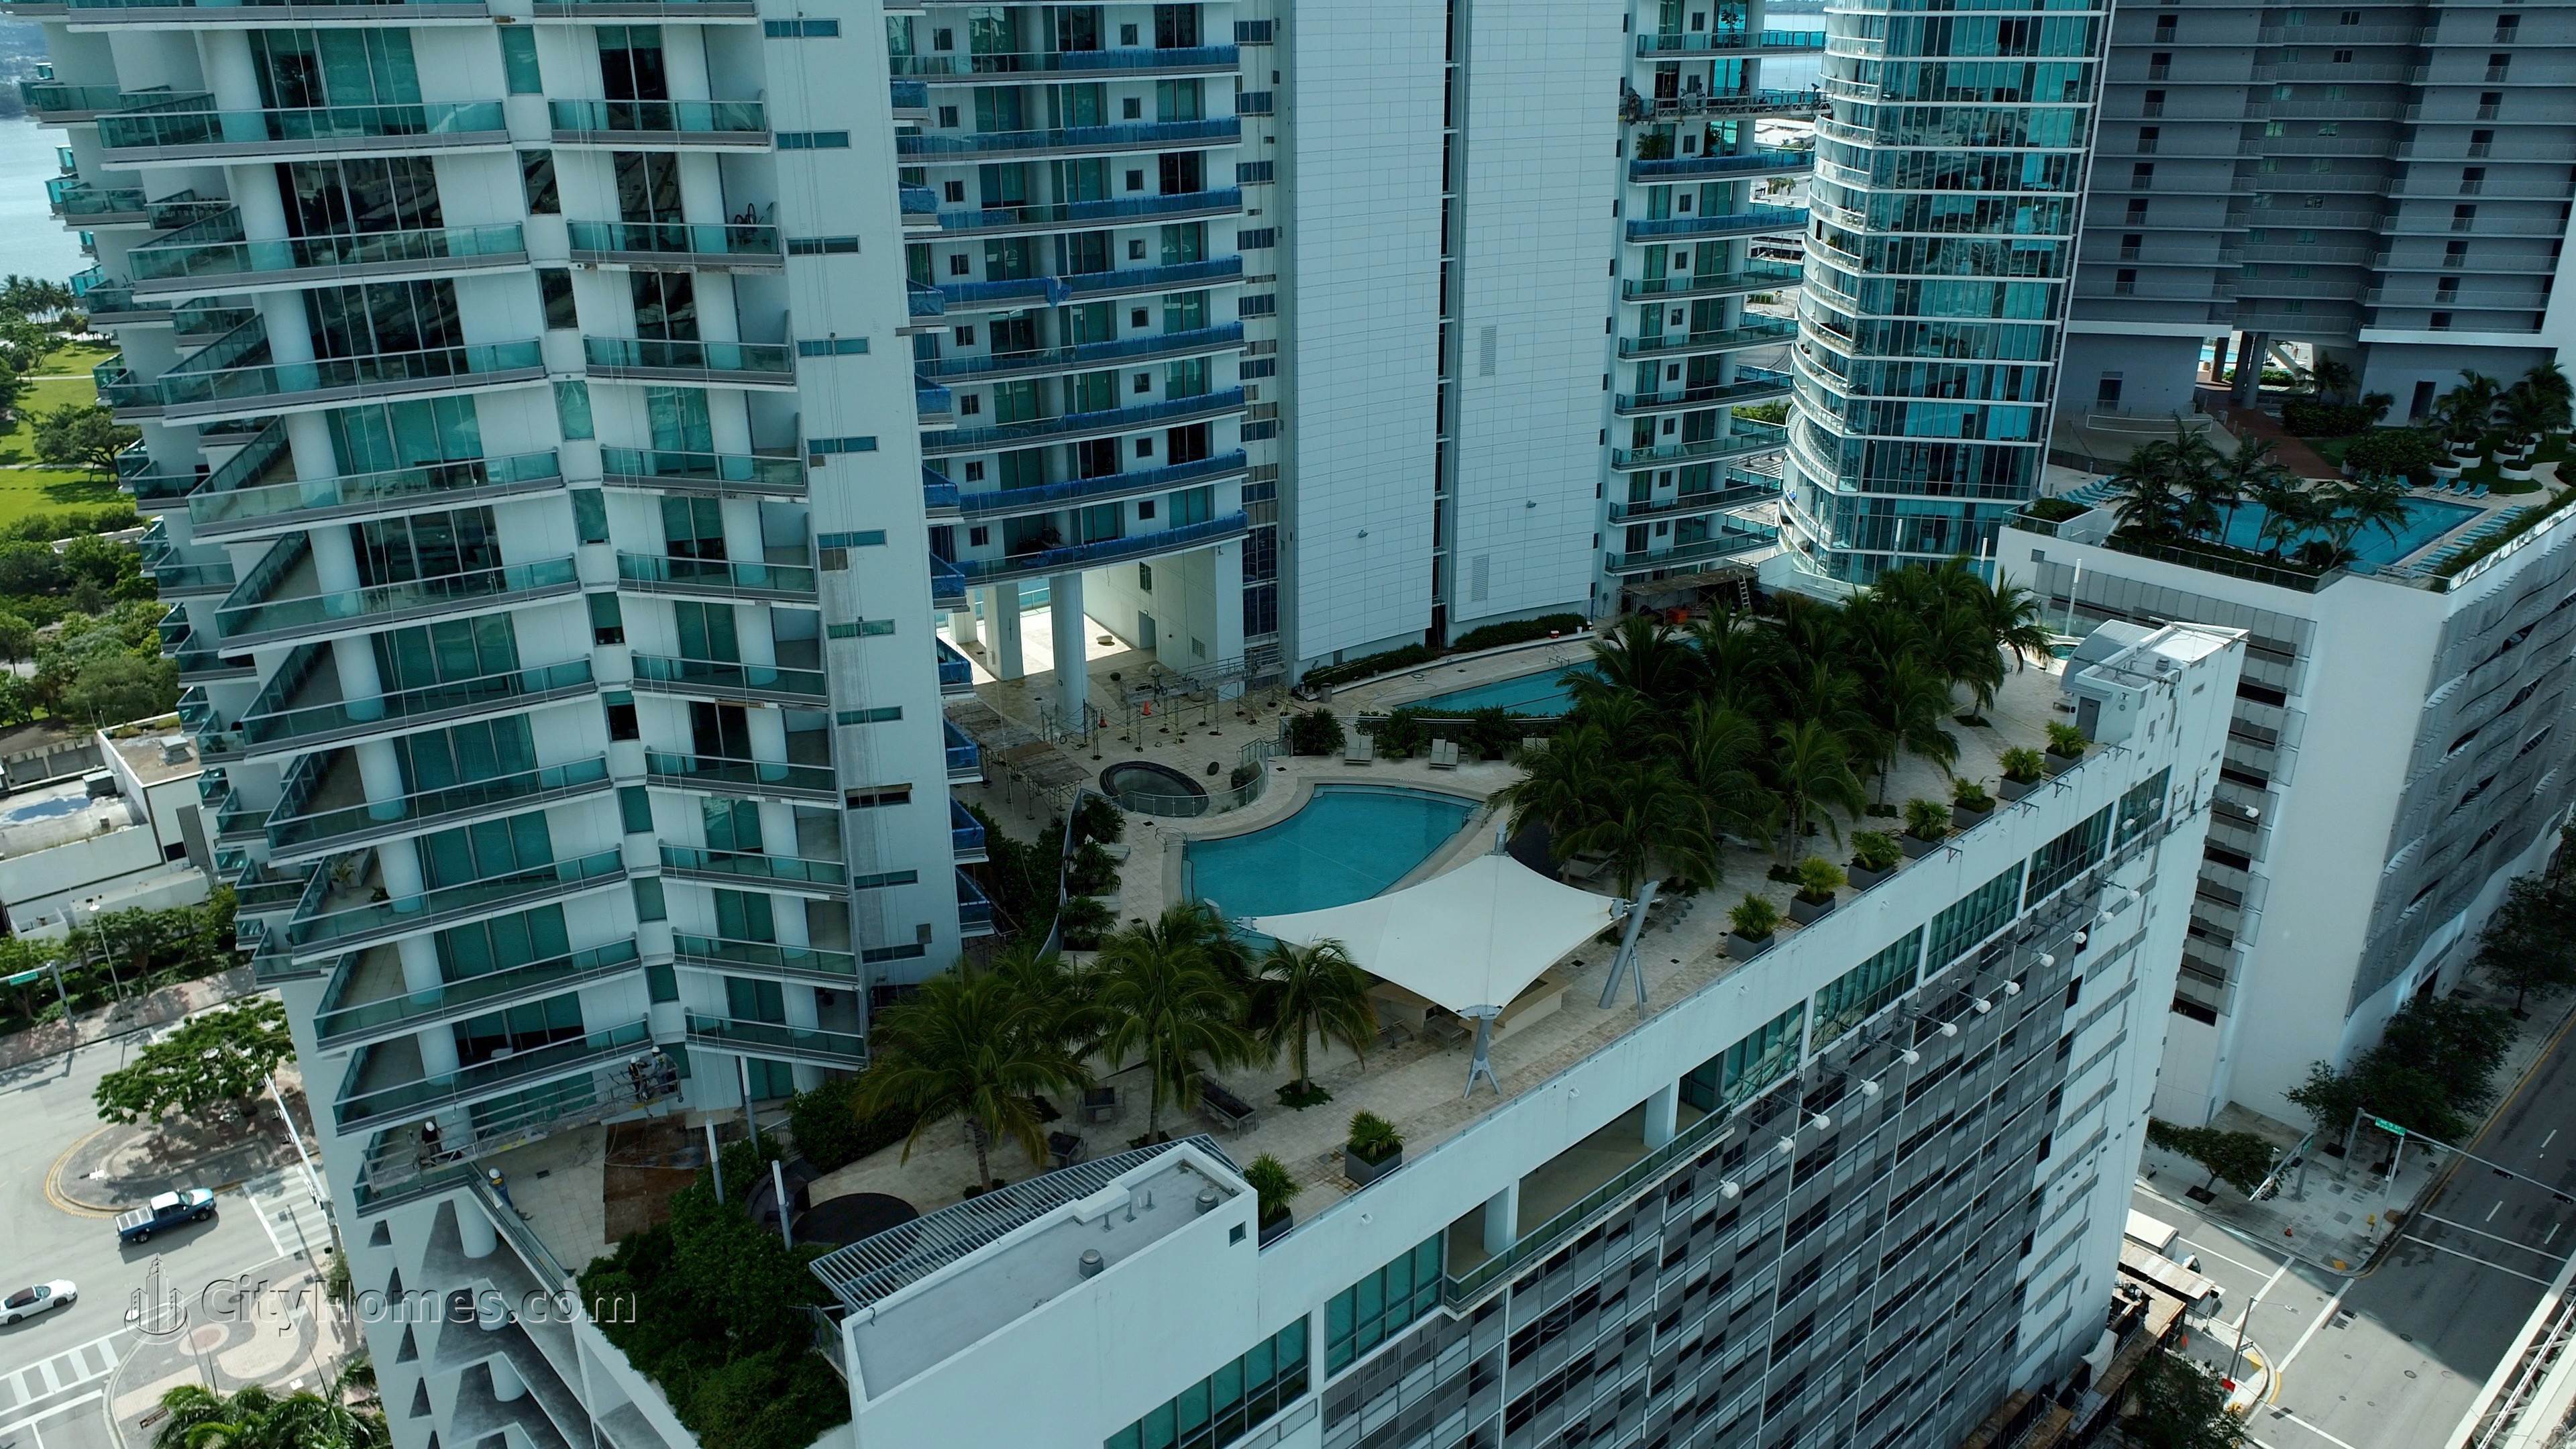 5. 900 Biscayne Bay gebouw op 900 Biscayne Boulevard, Miami, FL 33132